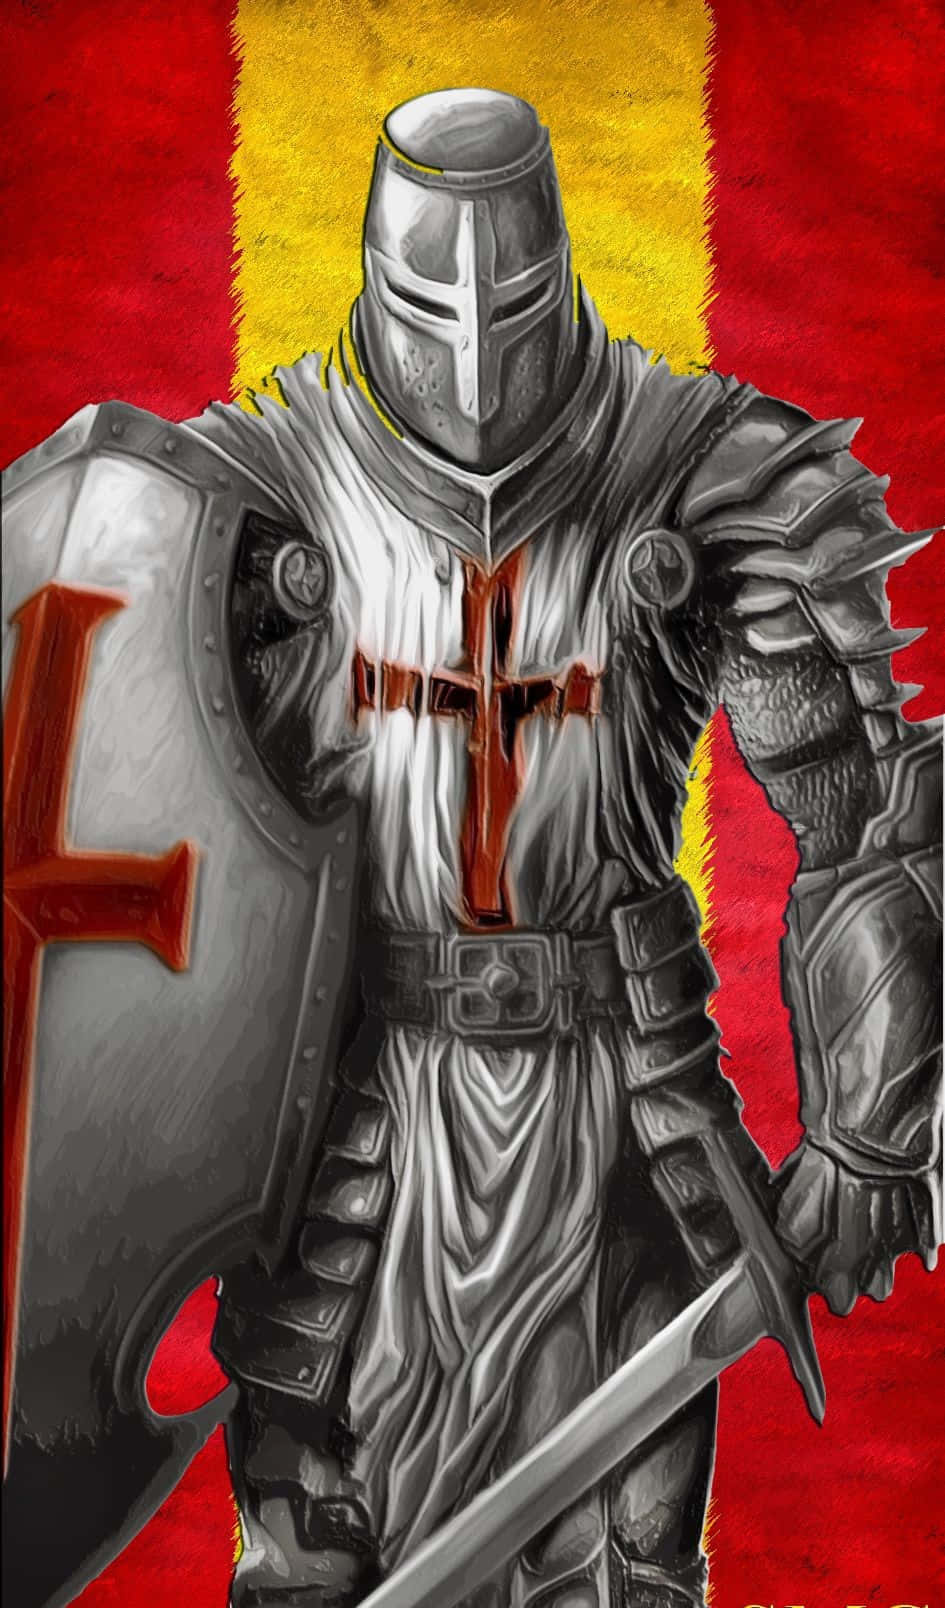 Equipadocon Una Espada Y Un Escudo, Un Cruzado Está Listo Para Defender.